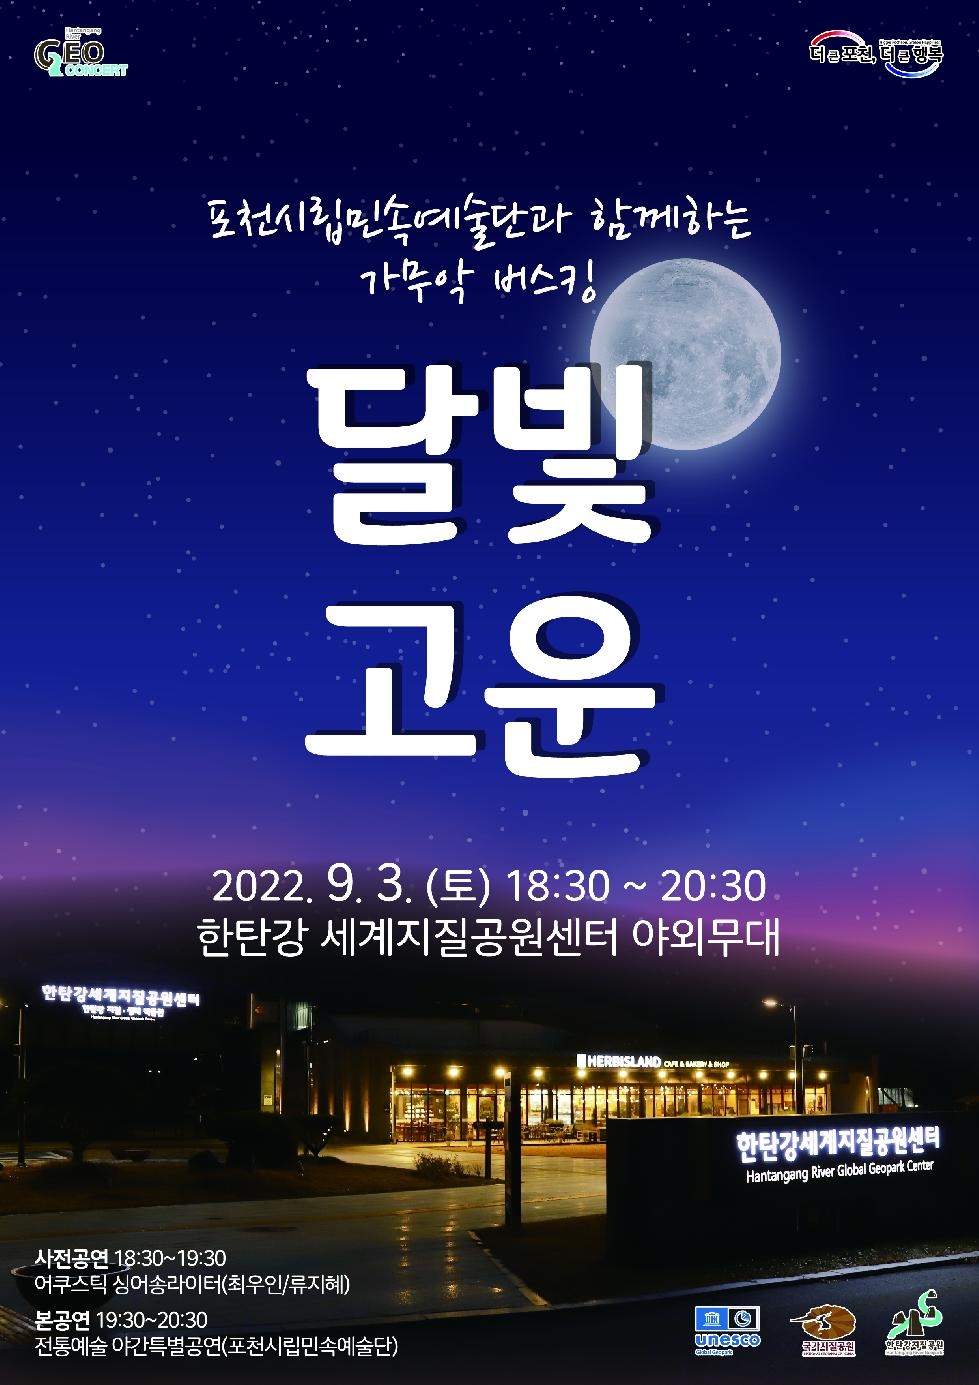 포천 한탄강 세계지질공원센터,  가을밤을 수놓는 화려한 야간공연 ‘달빛고운’개최